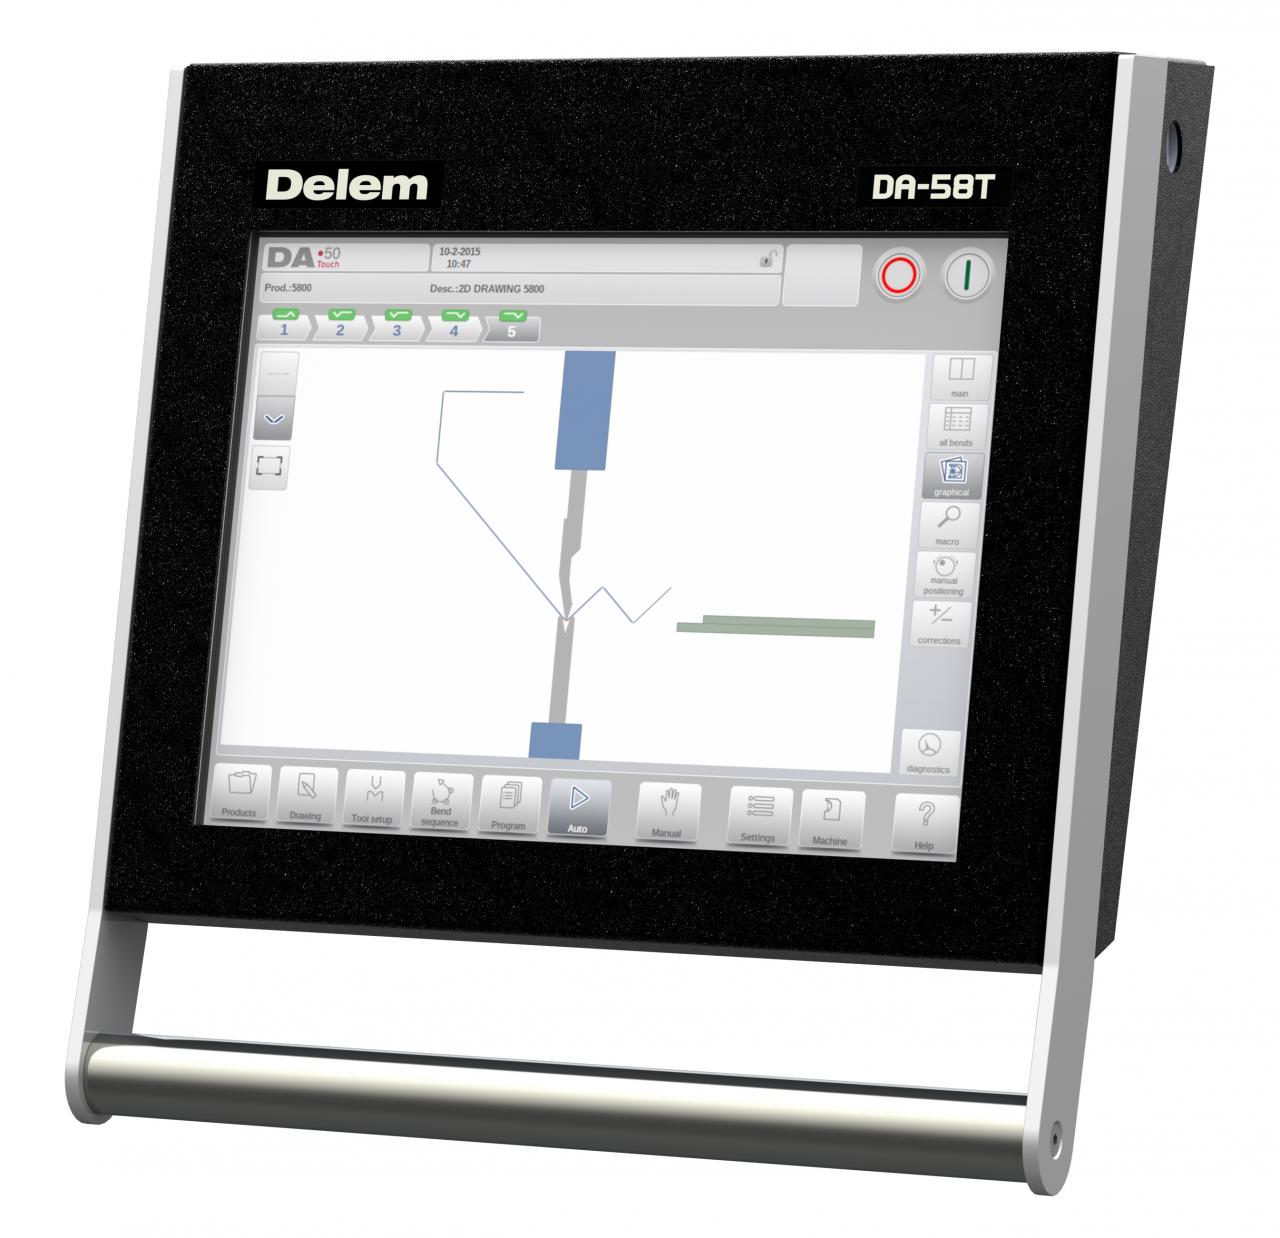 Da-66t Controller Cnc Hydraulic Press Brake Price 3d Touch Screen System-ով